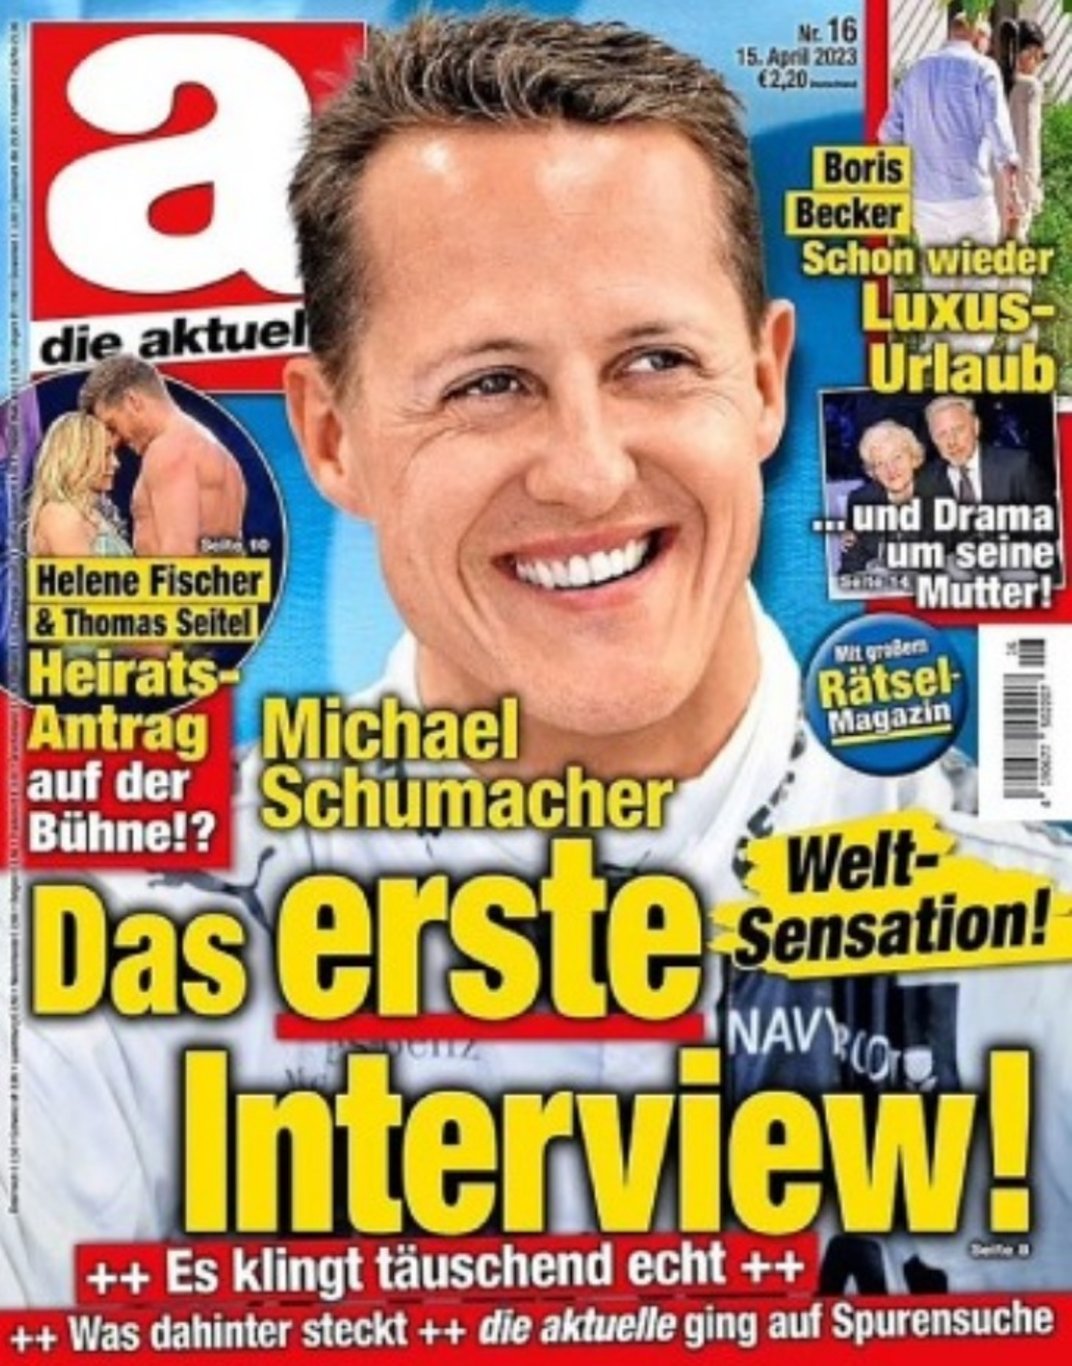 Schumacher röportajı yayınlandı! Skandal gerçek ortaya çıktı...